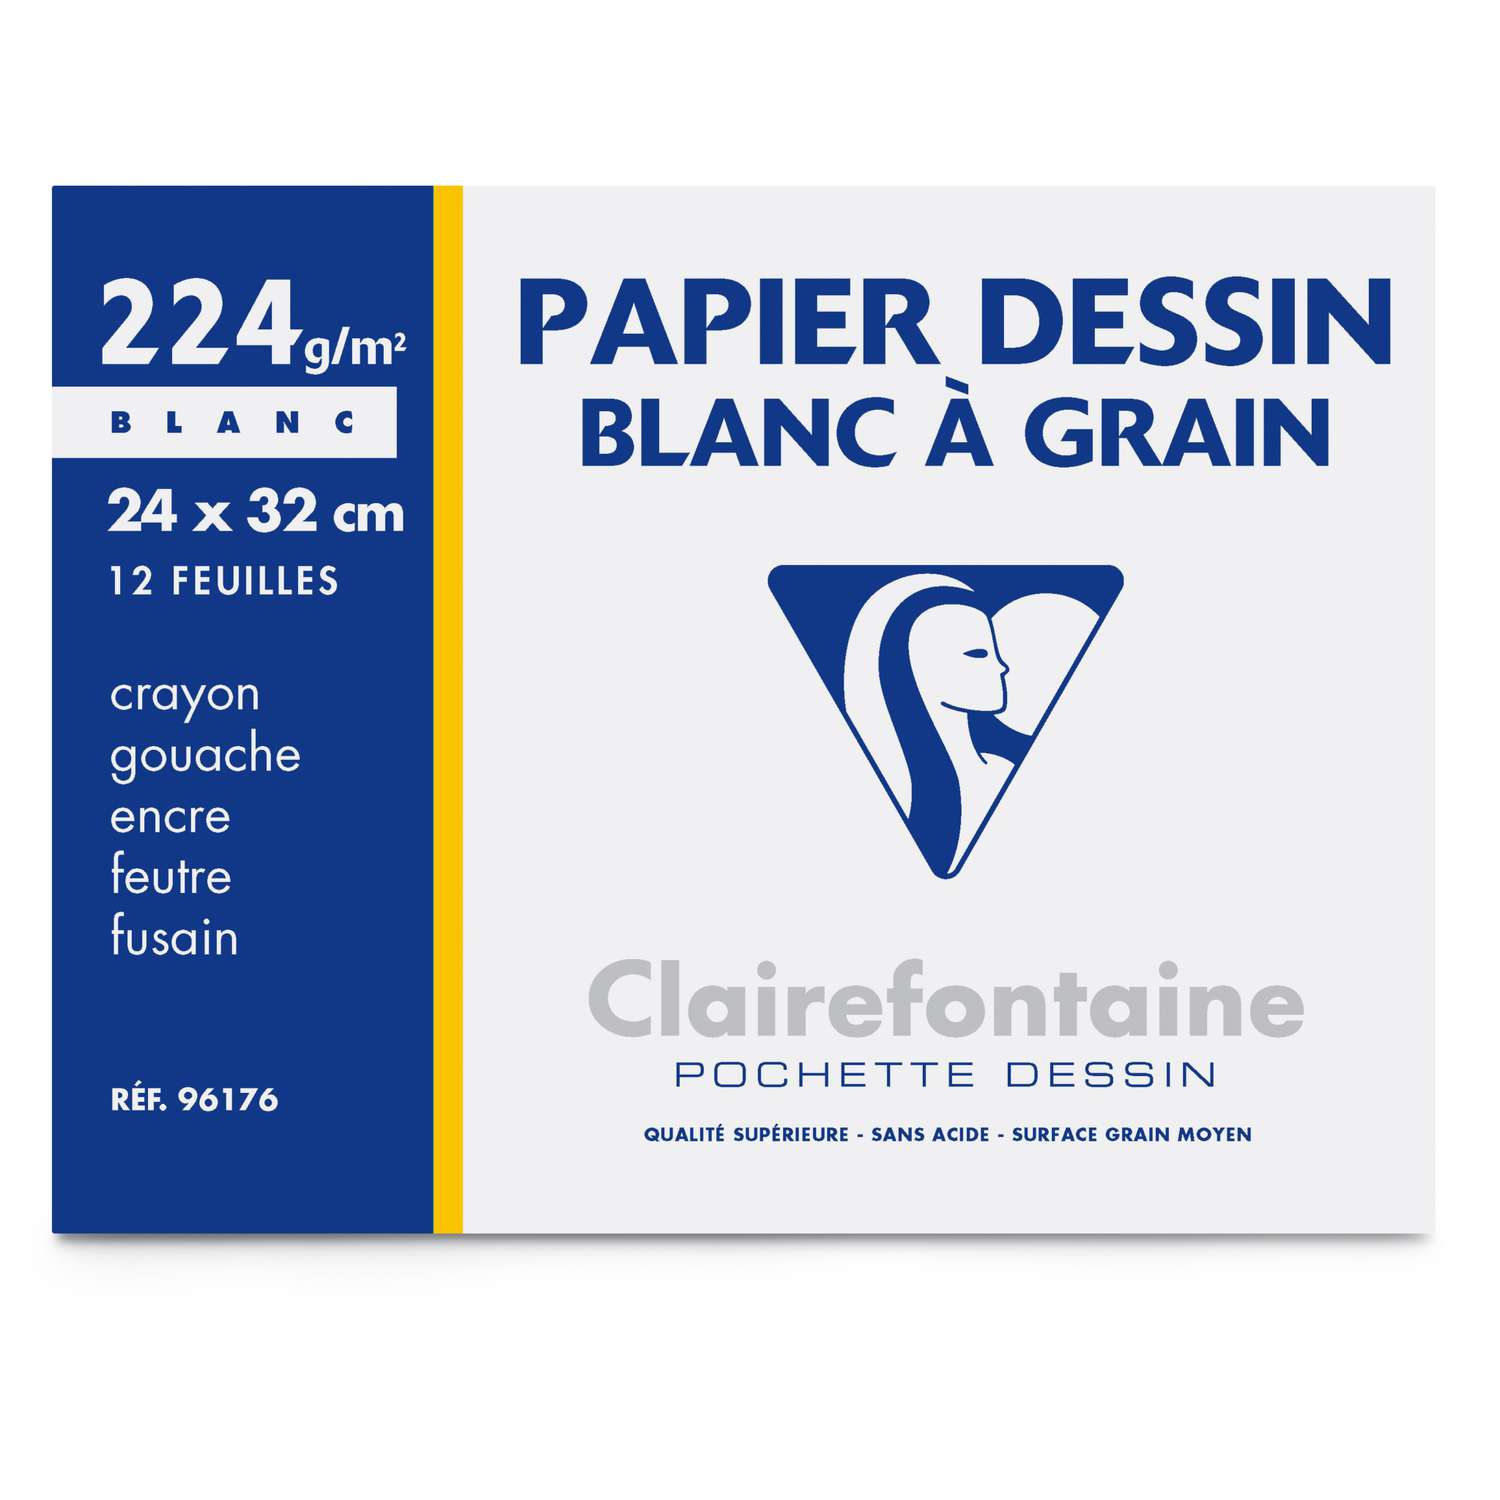 Protège-cahier 24 x 32cm en PVC couleur BLANC, qualité Clairefontaine.